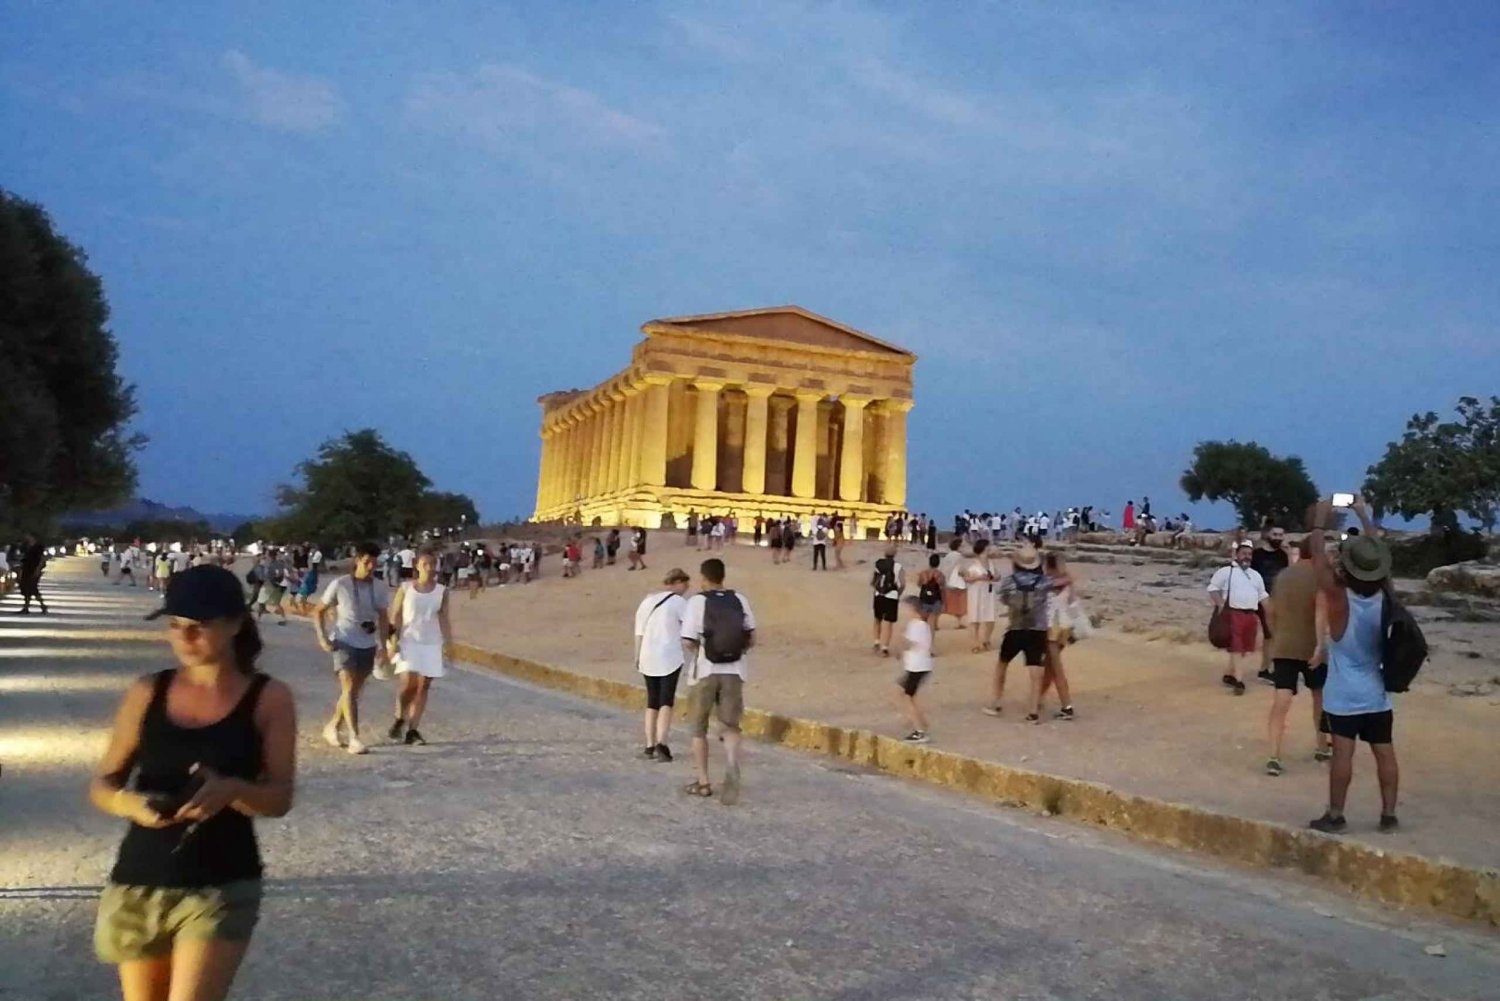 Agrigento: Visita nocturna sin colas al Valle de los Templos